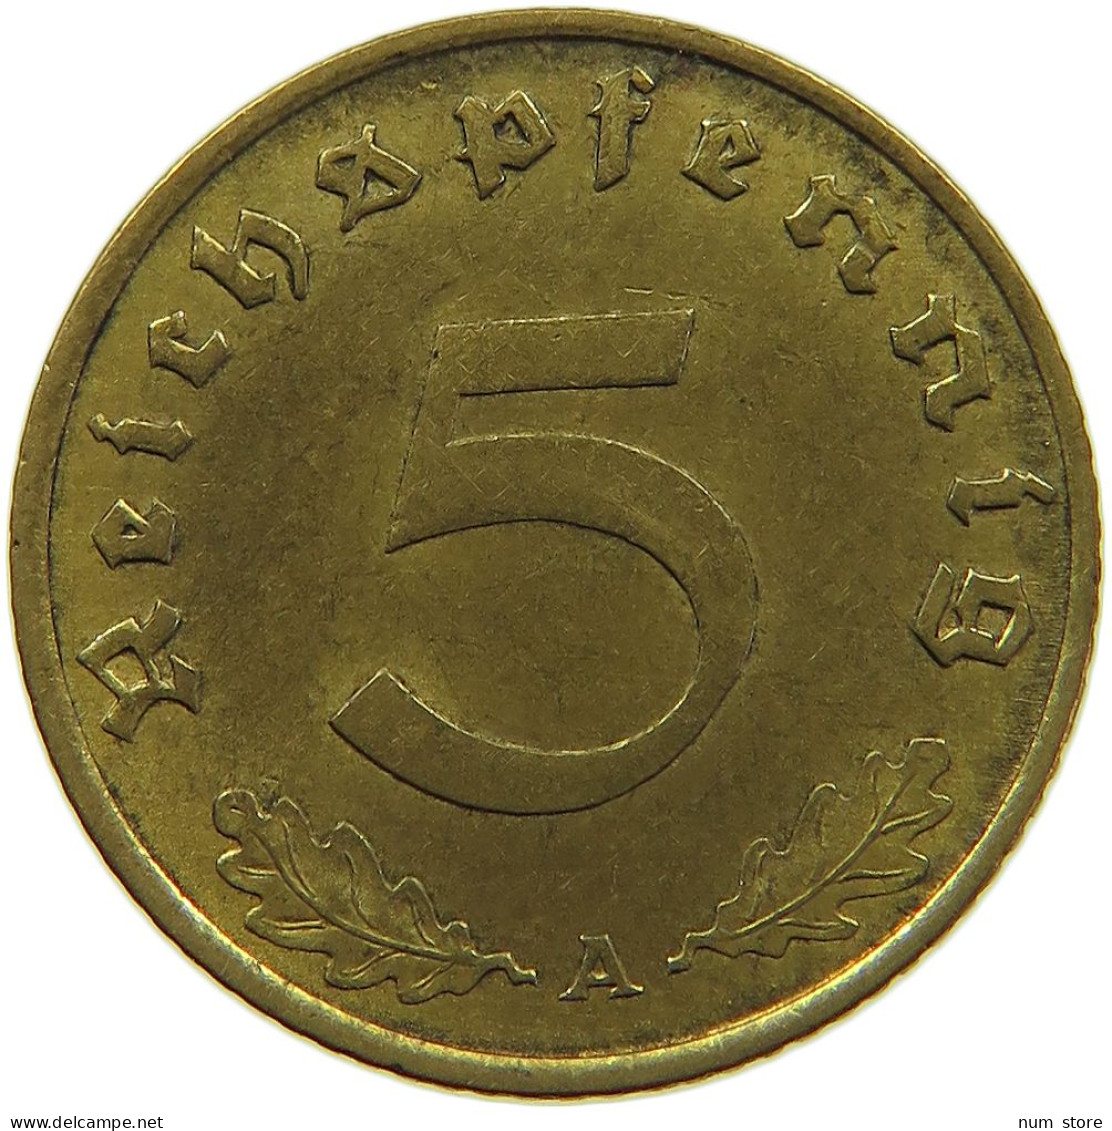 GERMANY 5 REICHSPFENNIG 1938 A #s091 0615 - 5 Reichspfennig